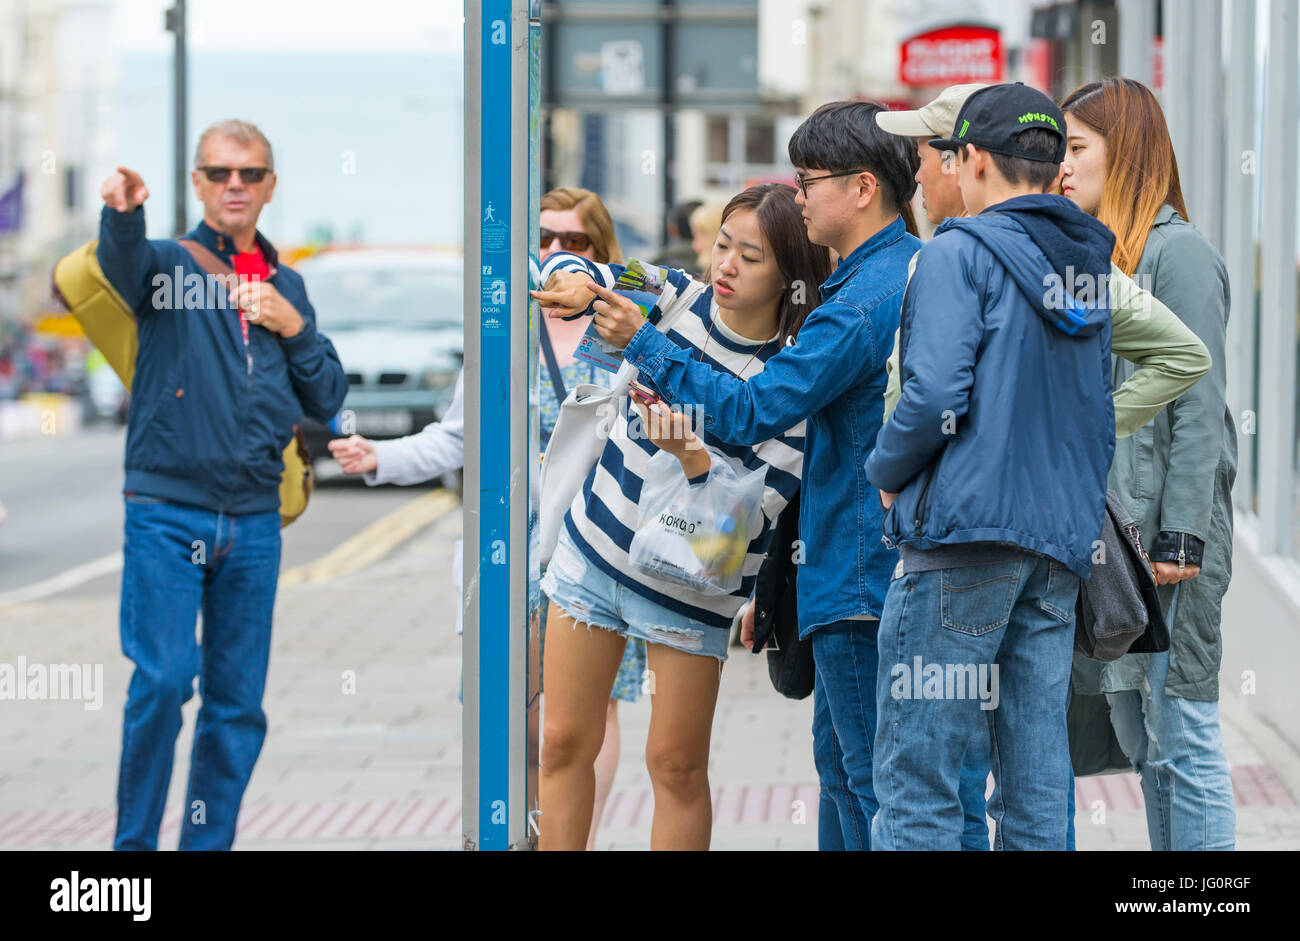 Japanische Touristen betrachten eine Straßenkarte in einer Stadt, um Richtungen zu finden. Stockfoto